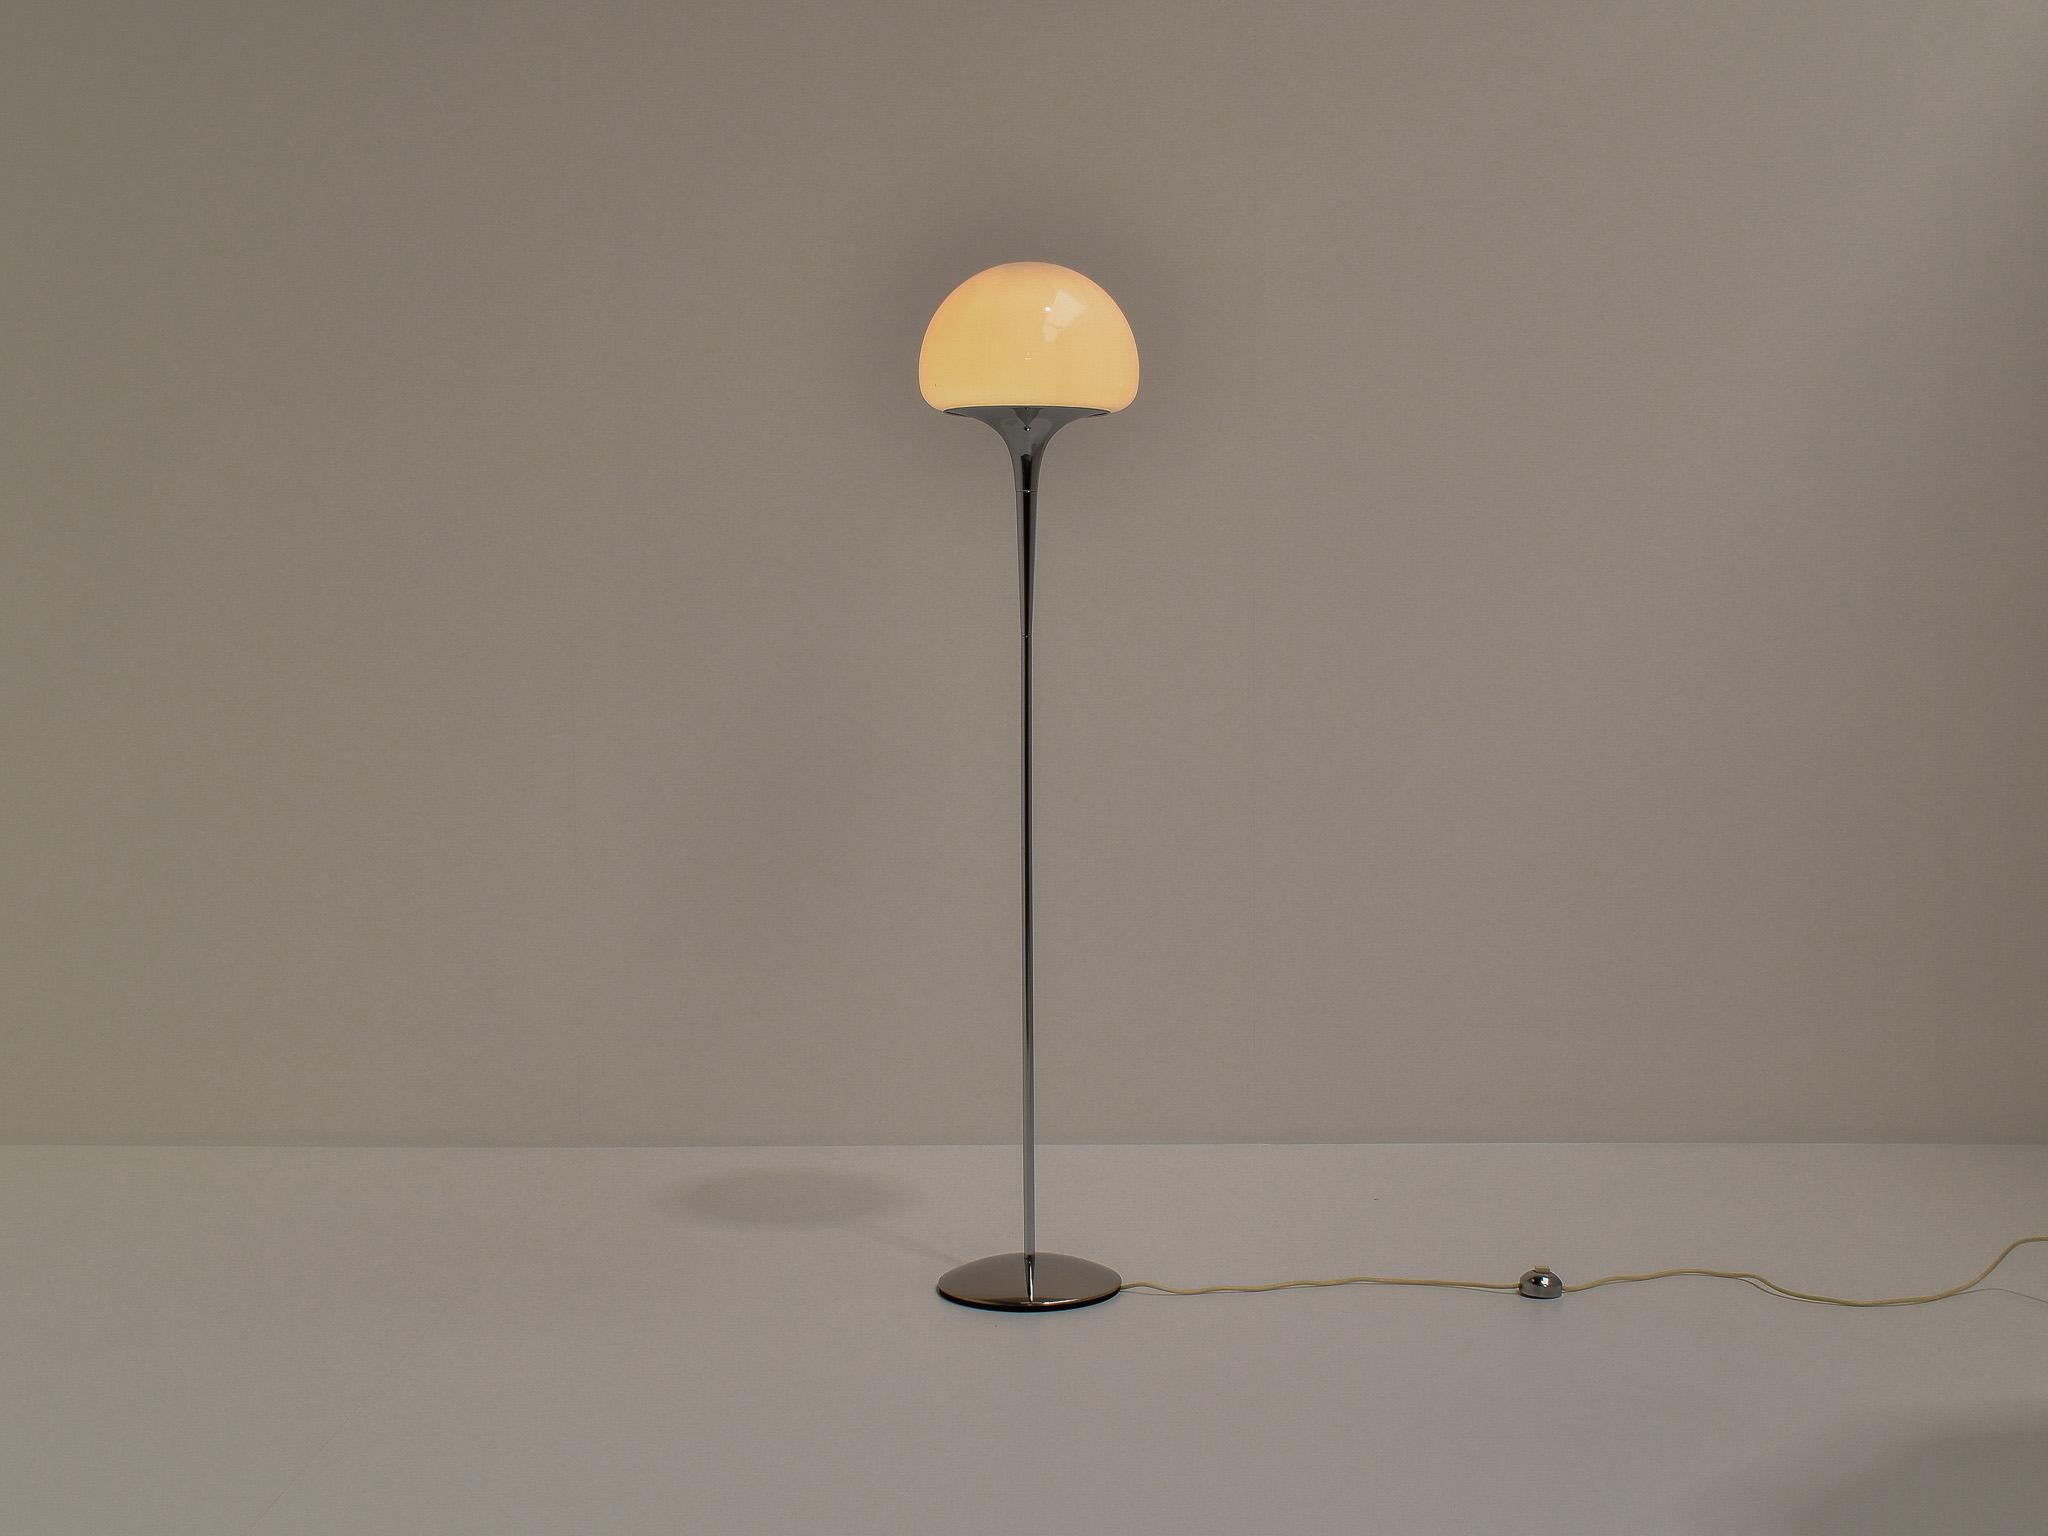 Elegant lampadaire italien, conçu vers les années 1970, en excellent état d'origine. 
Conçu par Reggiani, un célèbre designer italien. Ce modèle est peu répandu.

La lampe est très élégante, presque délicate en raison de son 